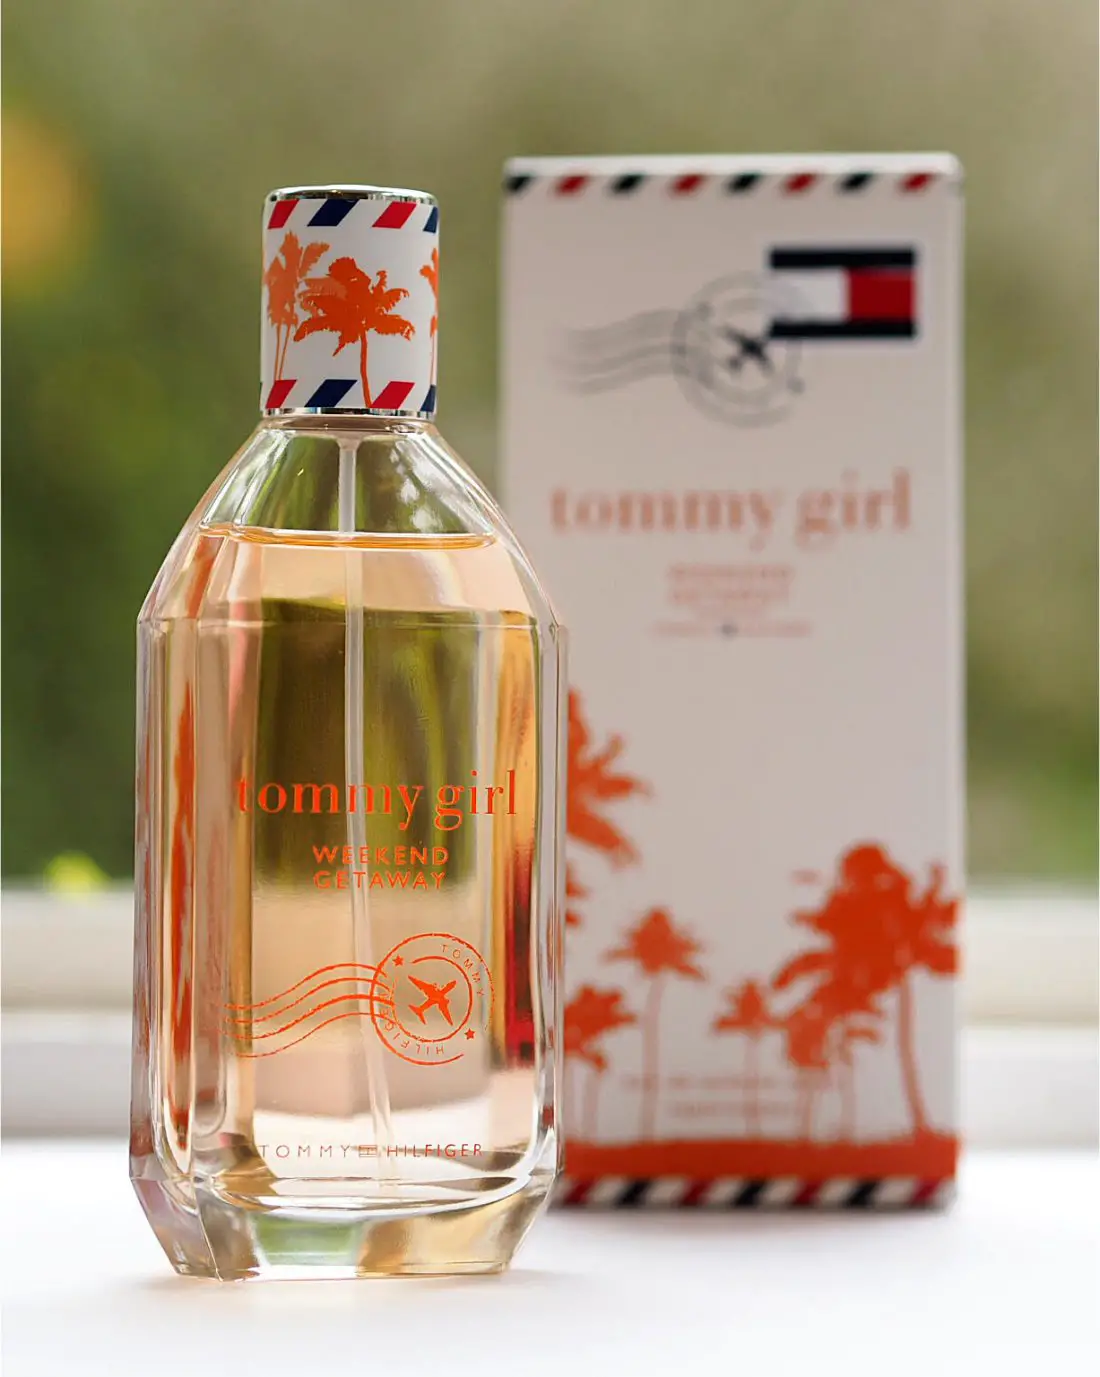 tommy weekend getaway perfume